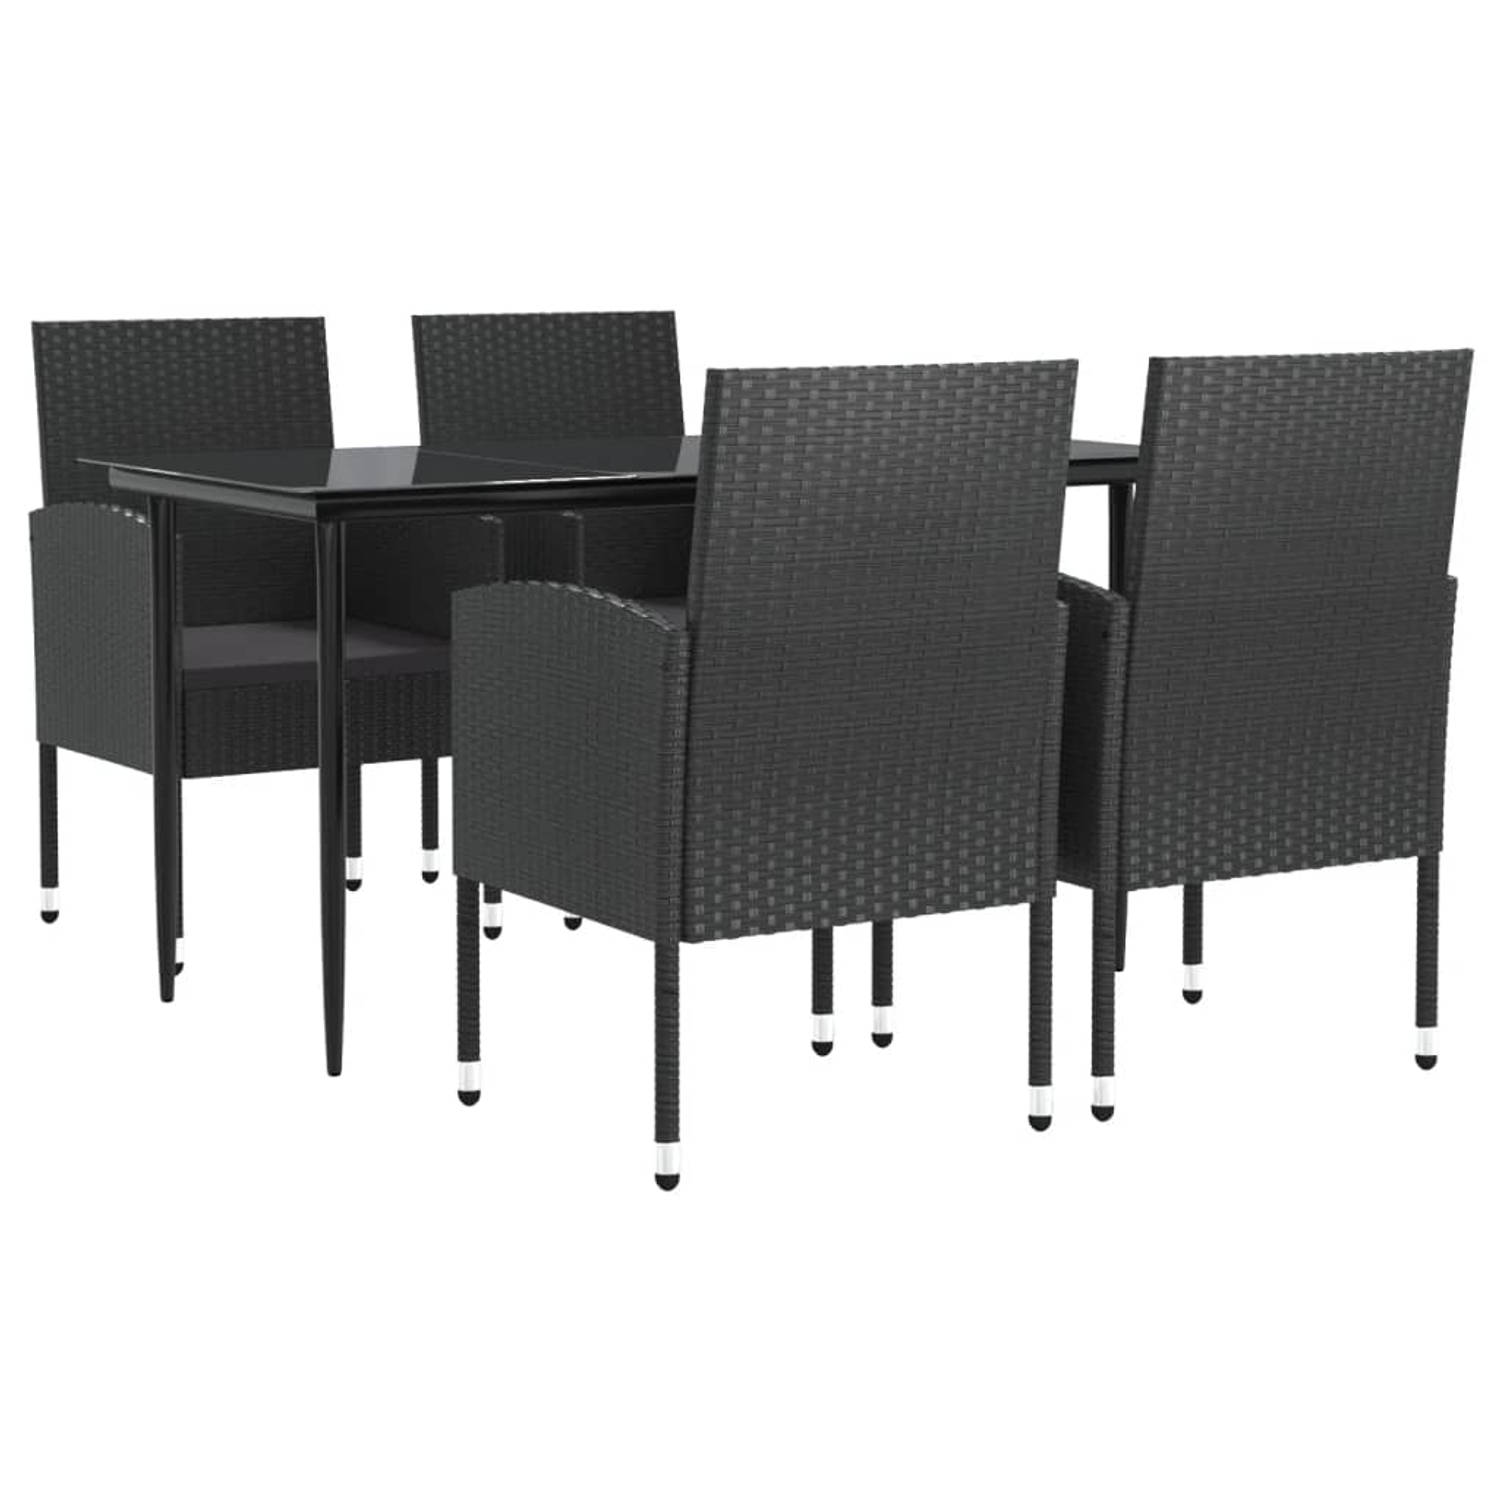 The Living Store Tuinset - Poly rattan - Zwart - 140x70x74 cm - Inclusief 4 stoelen met kussens